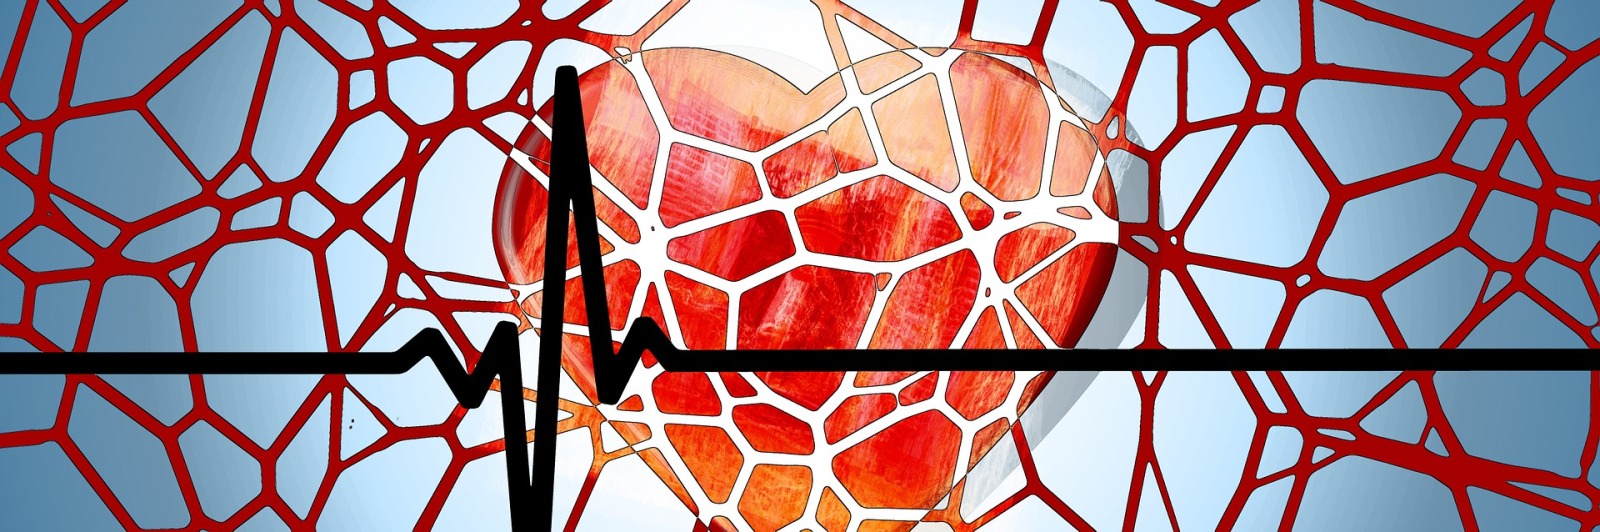 一个卡通的心的网络覆盖blood vessels and an ECG (electrocardiogram)